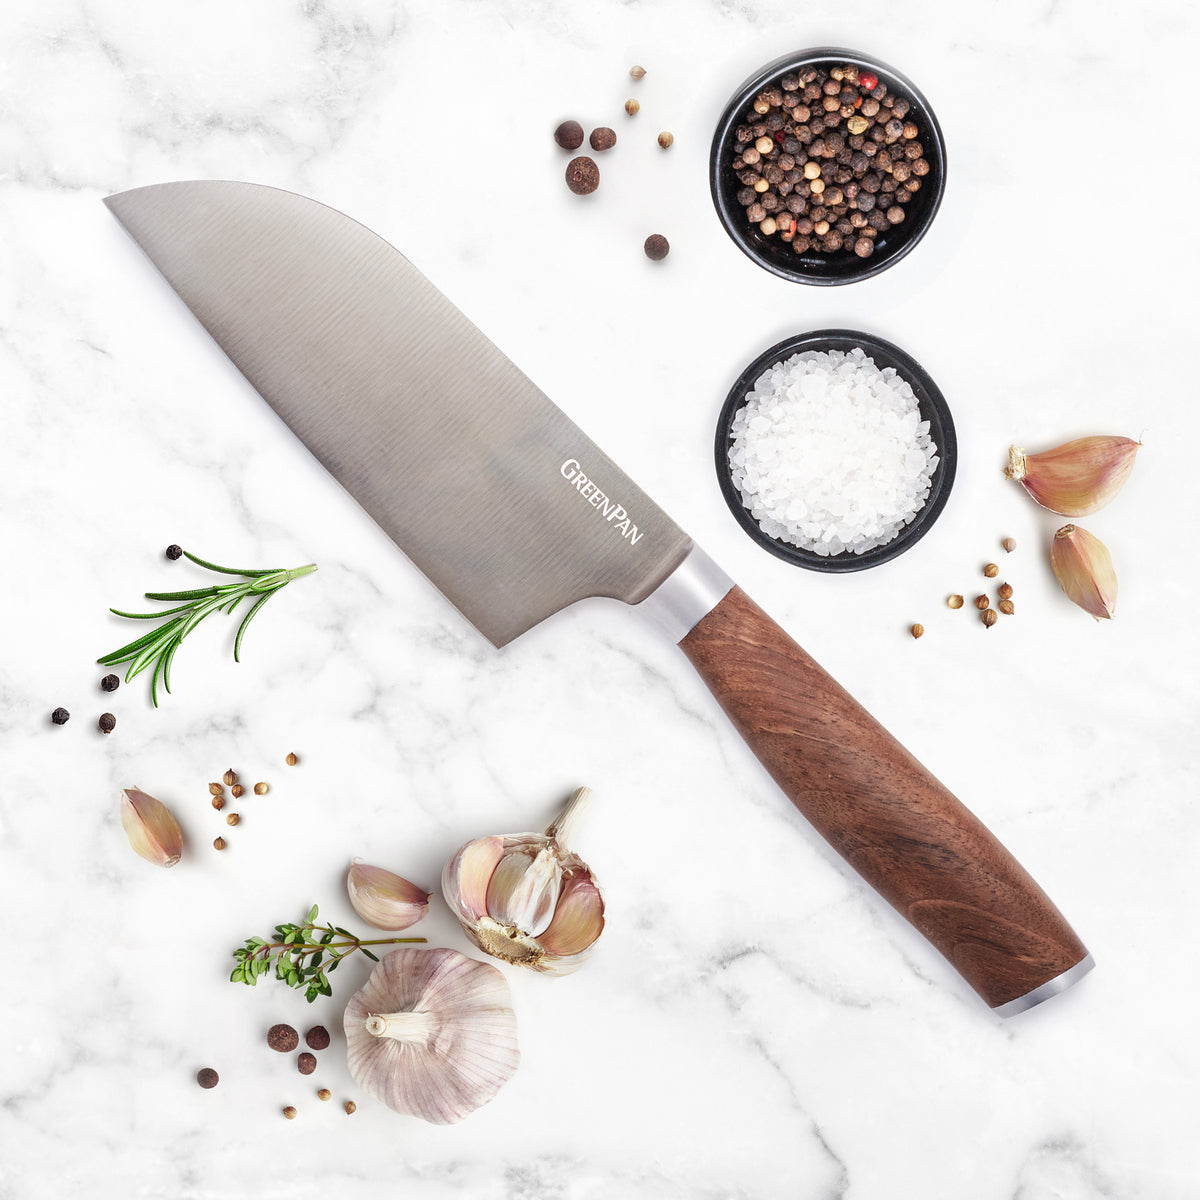 5-in-1 Kitchen Knife And Scissor Sharpener - Effortlessly Sharpen